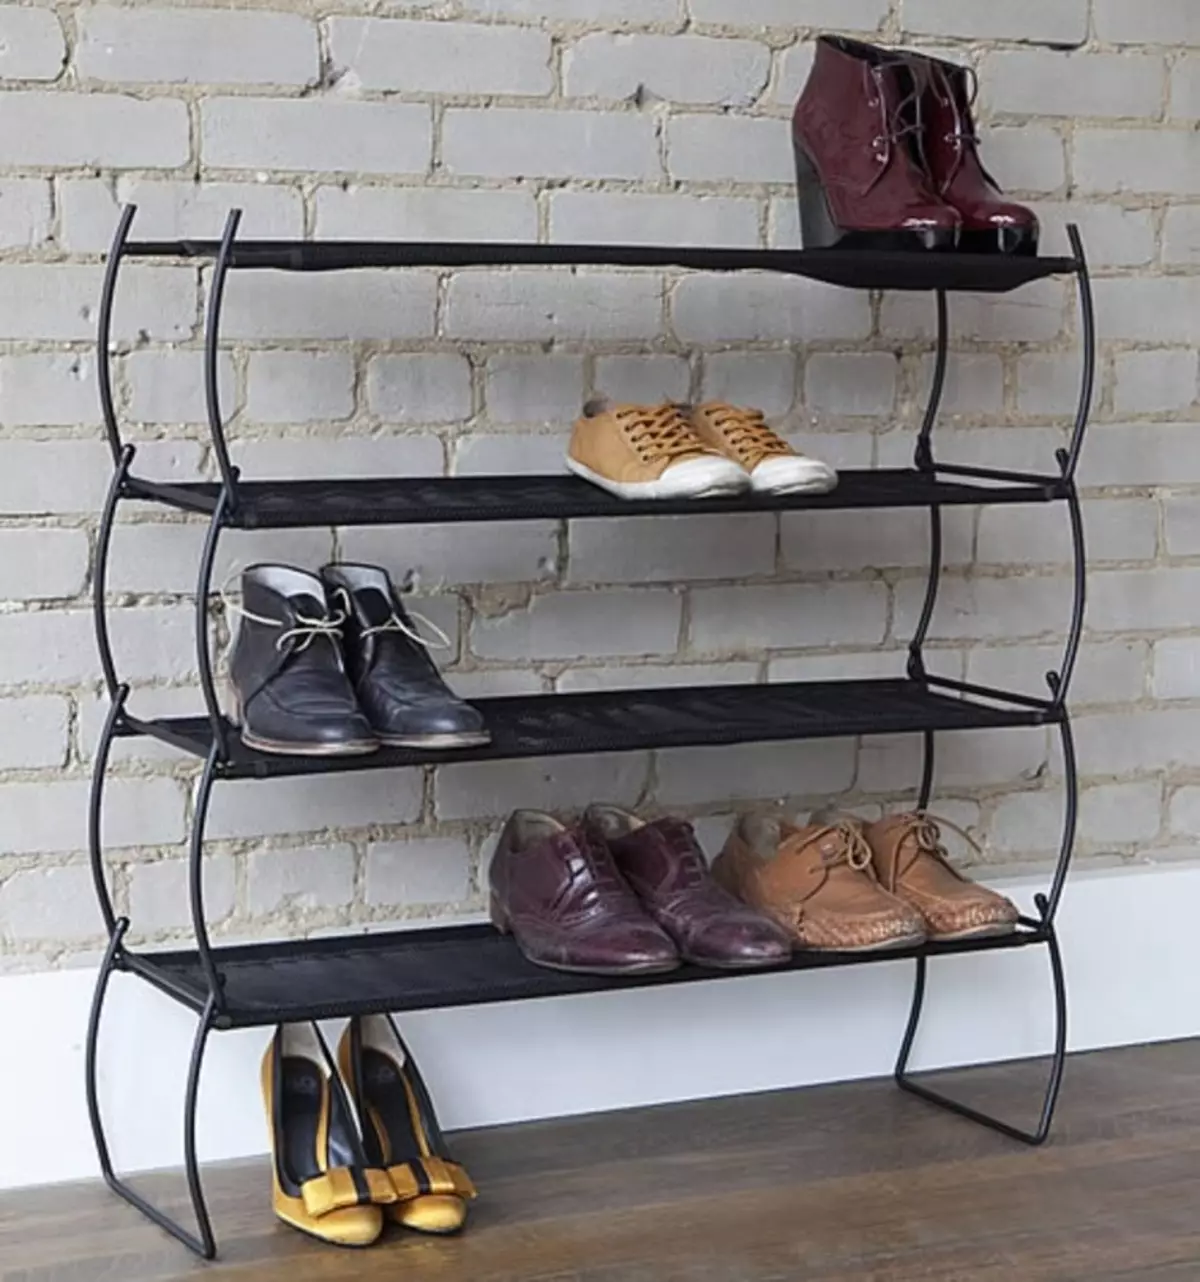 נעליים צרות במסדרון (83 תמונות): בחר ערדליים לנעליים עם עומק של 20 ס